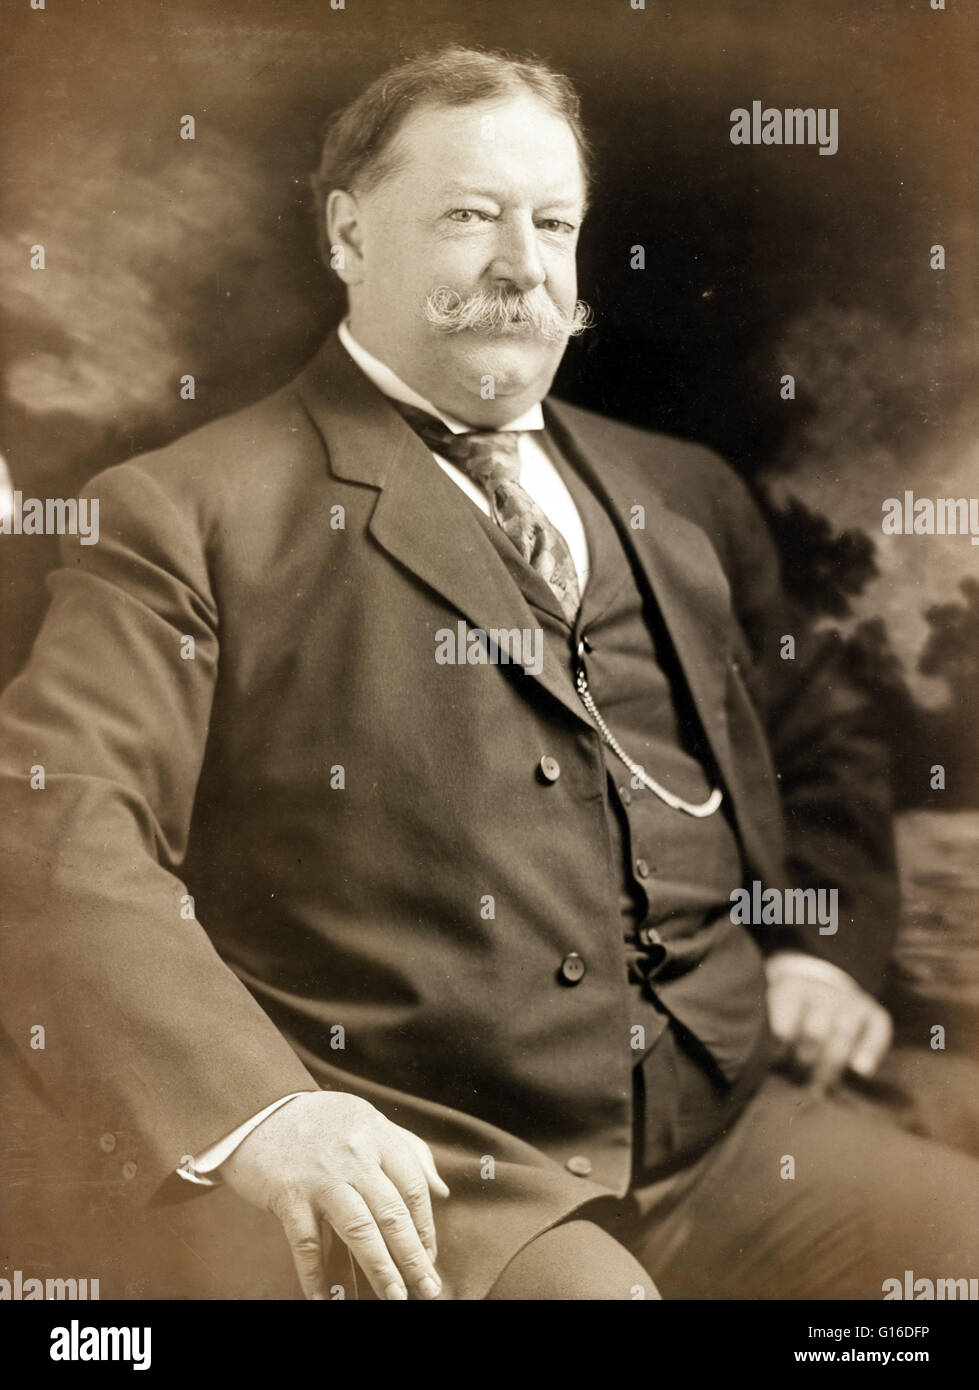 Sekretär des Krieges Taft fotografiert 8. Juni 1907 von Julius Caesar Strauss. Taft (15. September 1857 - 8. März 1930) war der 27. Präsident der Vereinigten Staaten (1909-1913) und später der zehnten Oberrichter der Vereinigten Staaten (1921-1930). Stockfoto